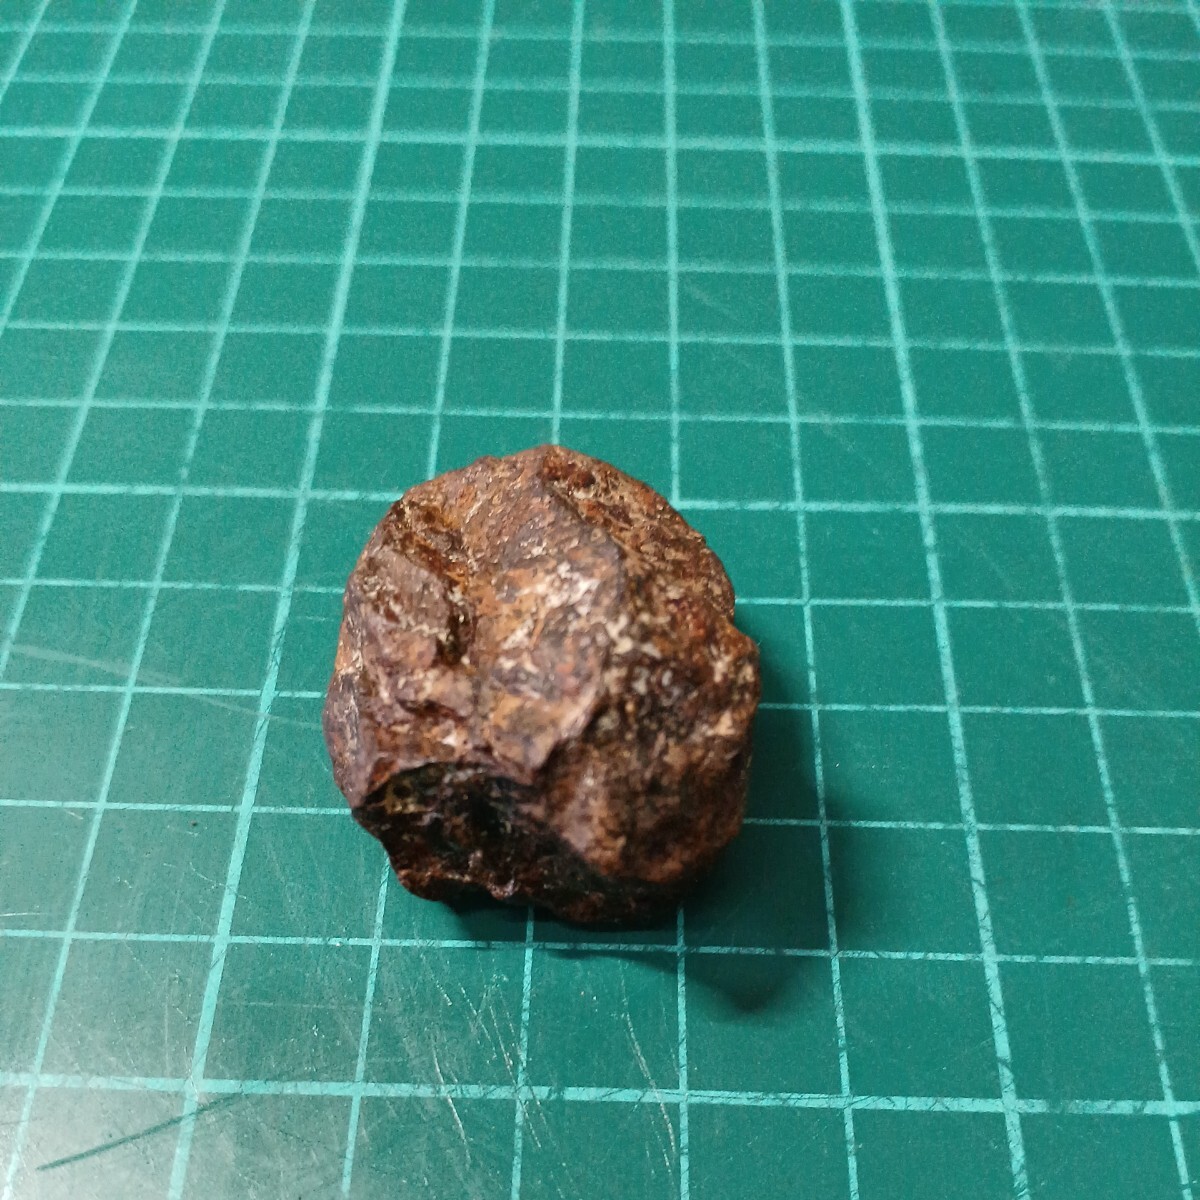 041010 石質隕石 コンドライド隕石 サハラ砂漠 3.9cm×2.3cm×2.8cm 31g の画像2